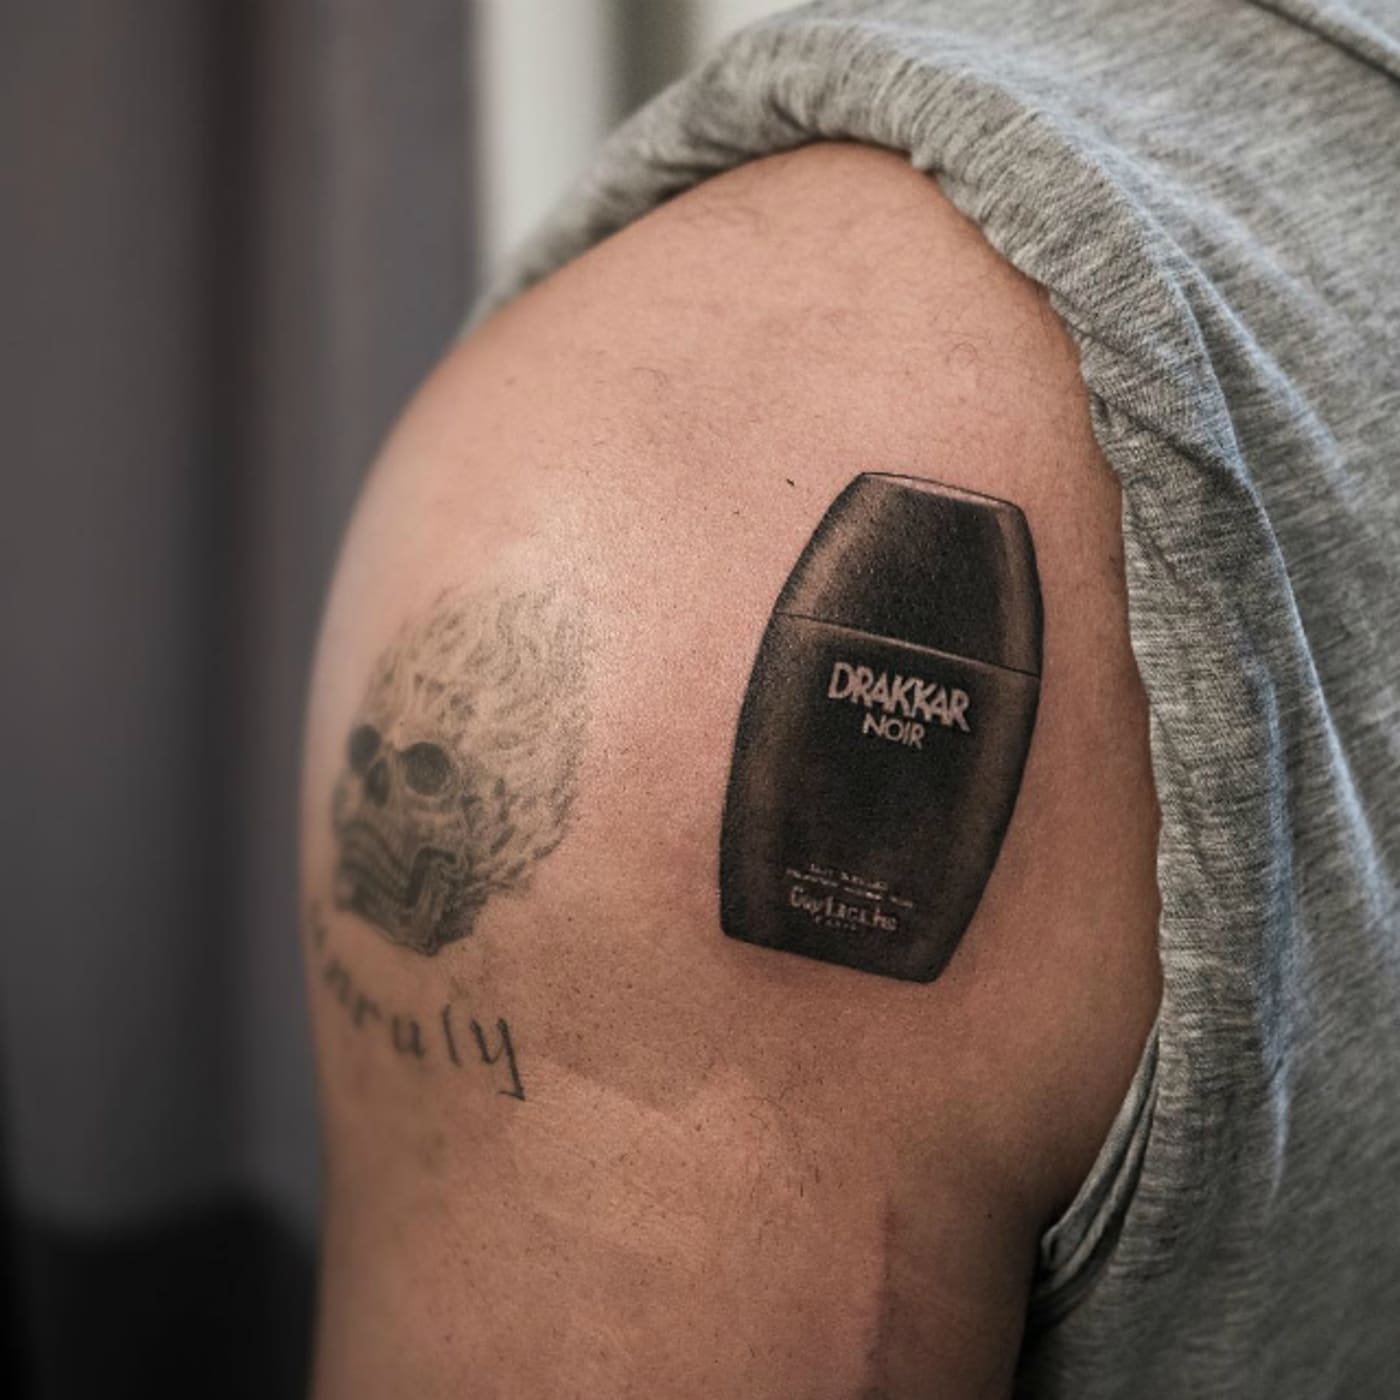 Drake's Drakkar Noir tattoo